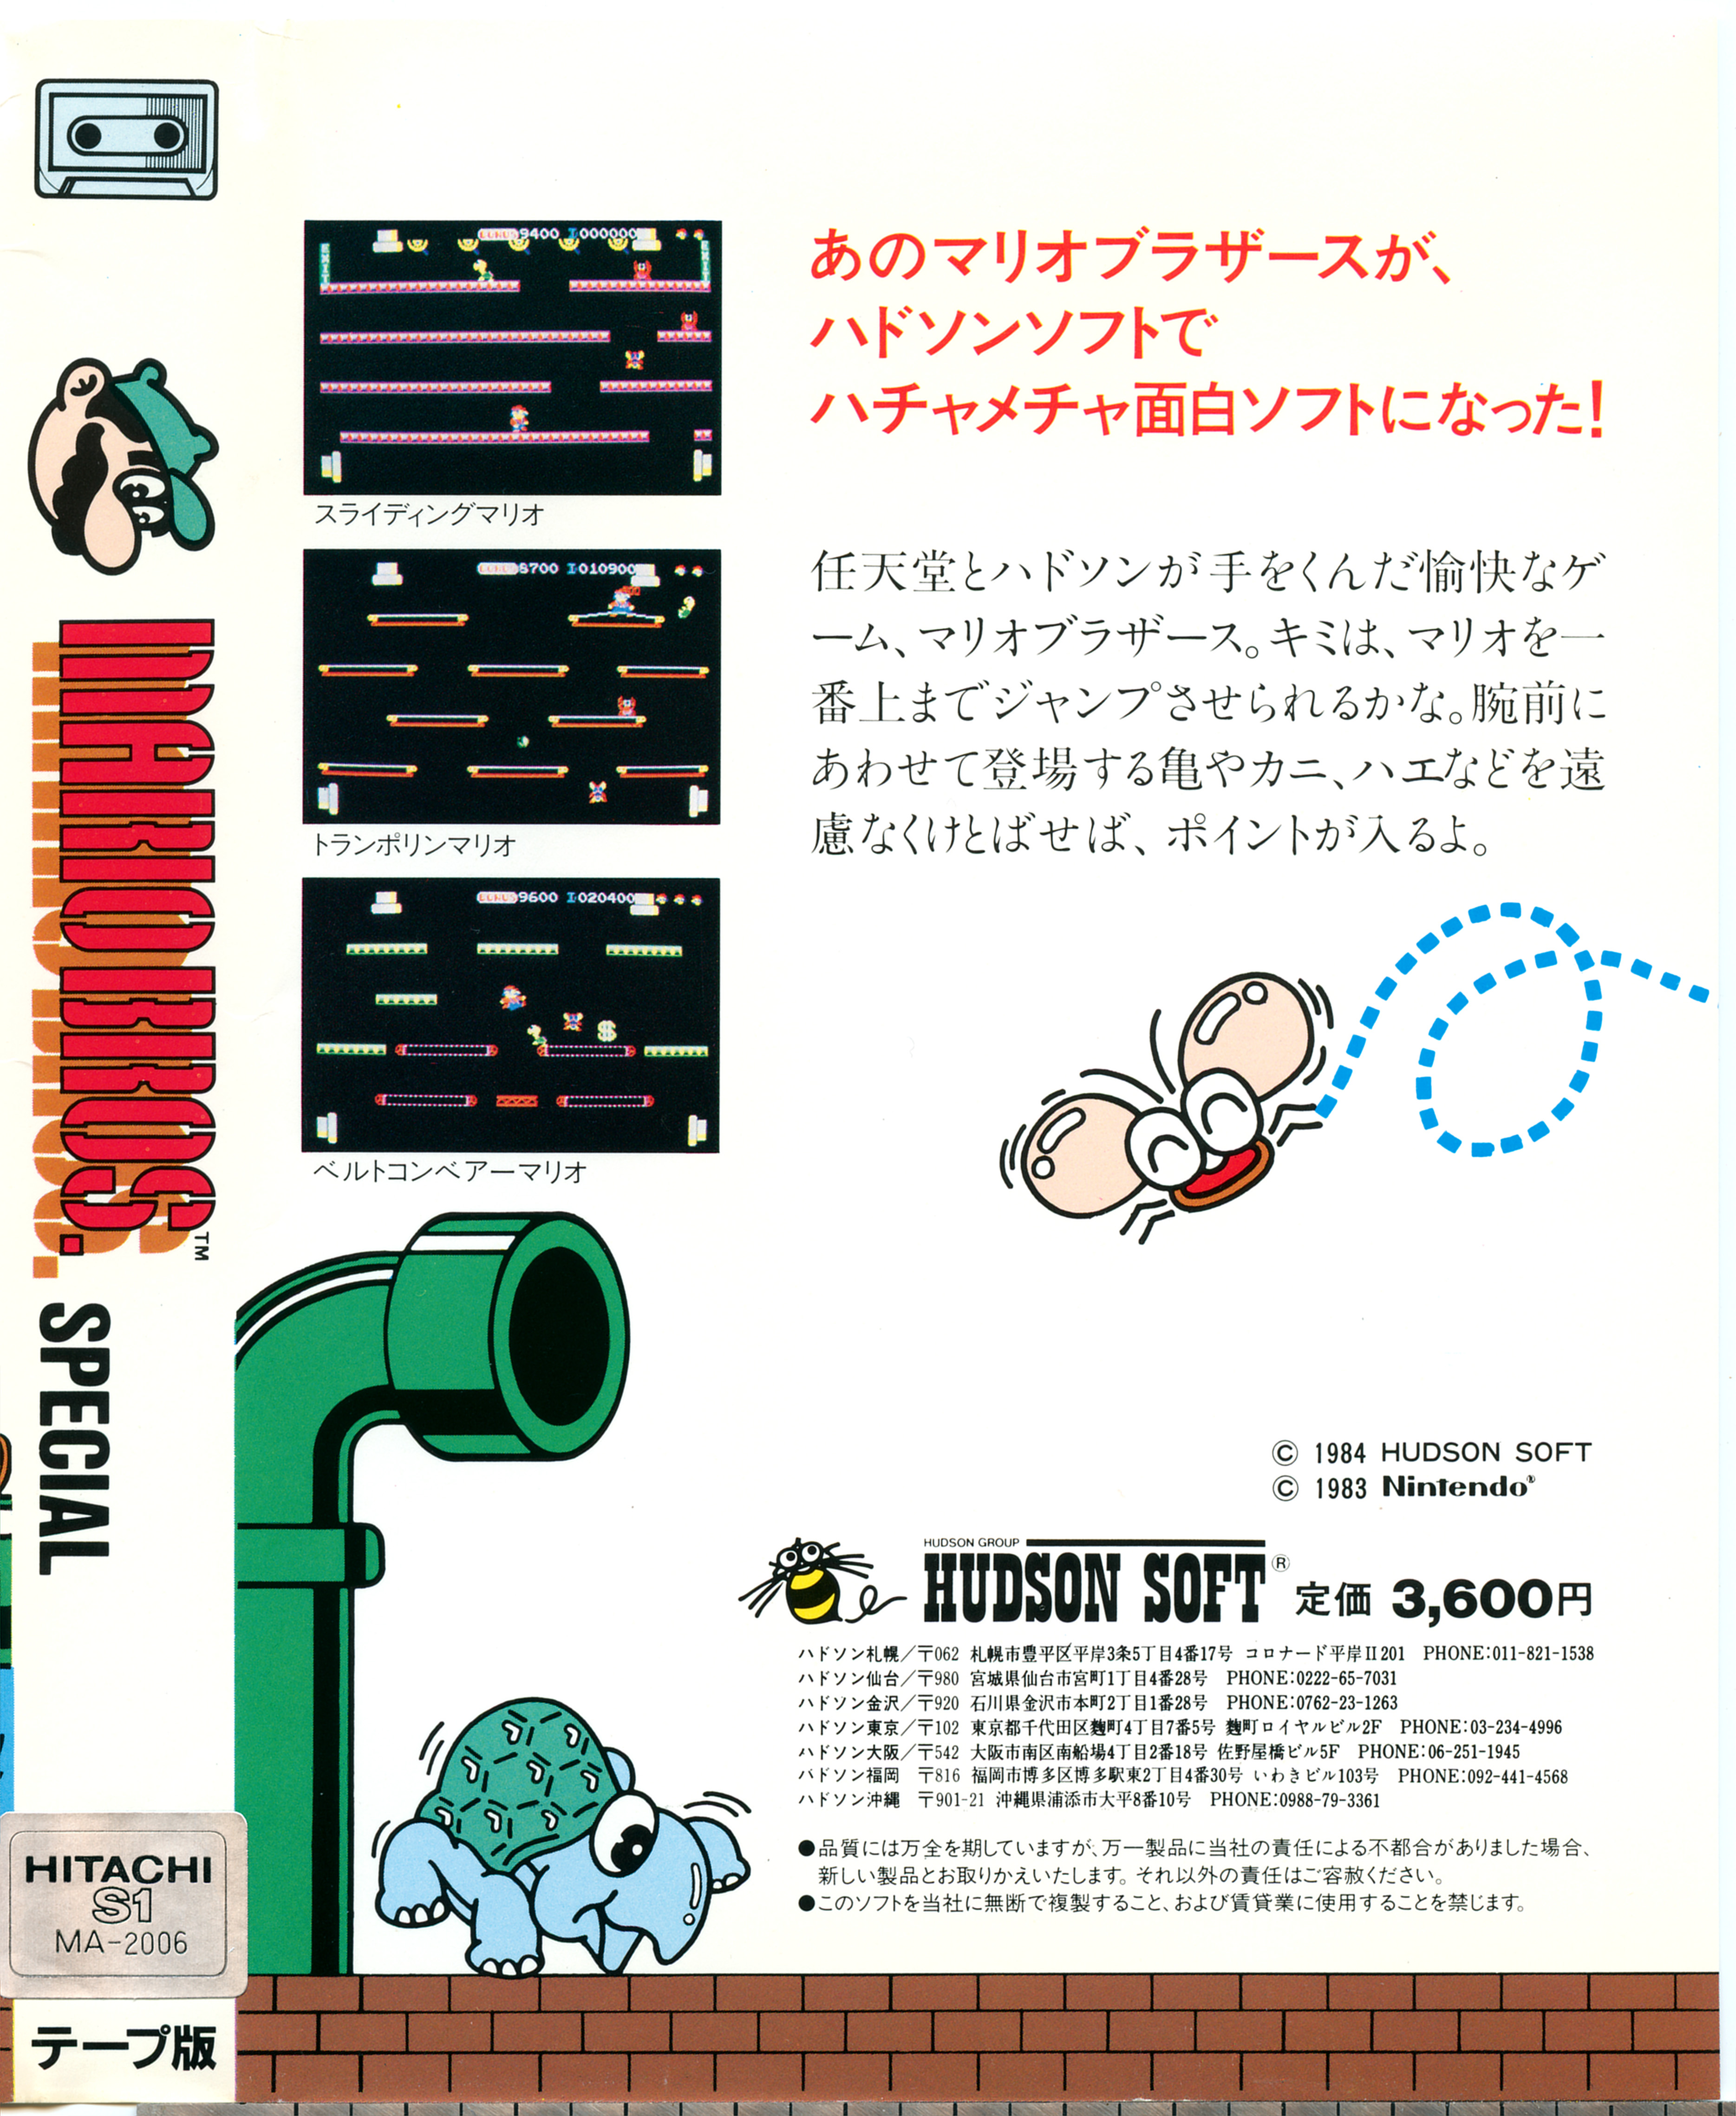 Mario bros special. Mario Bros. Special 1984 обложка.